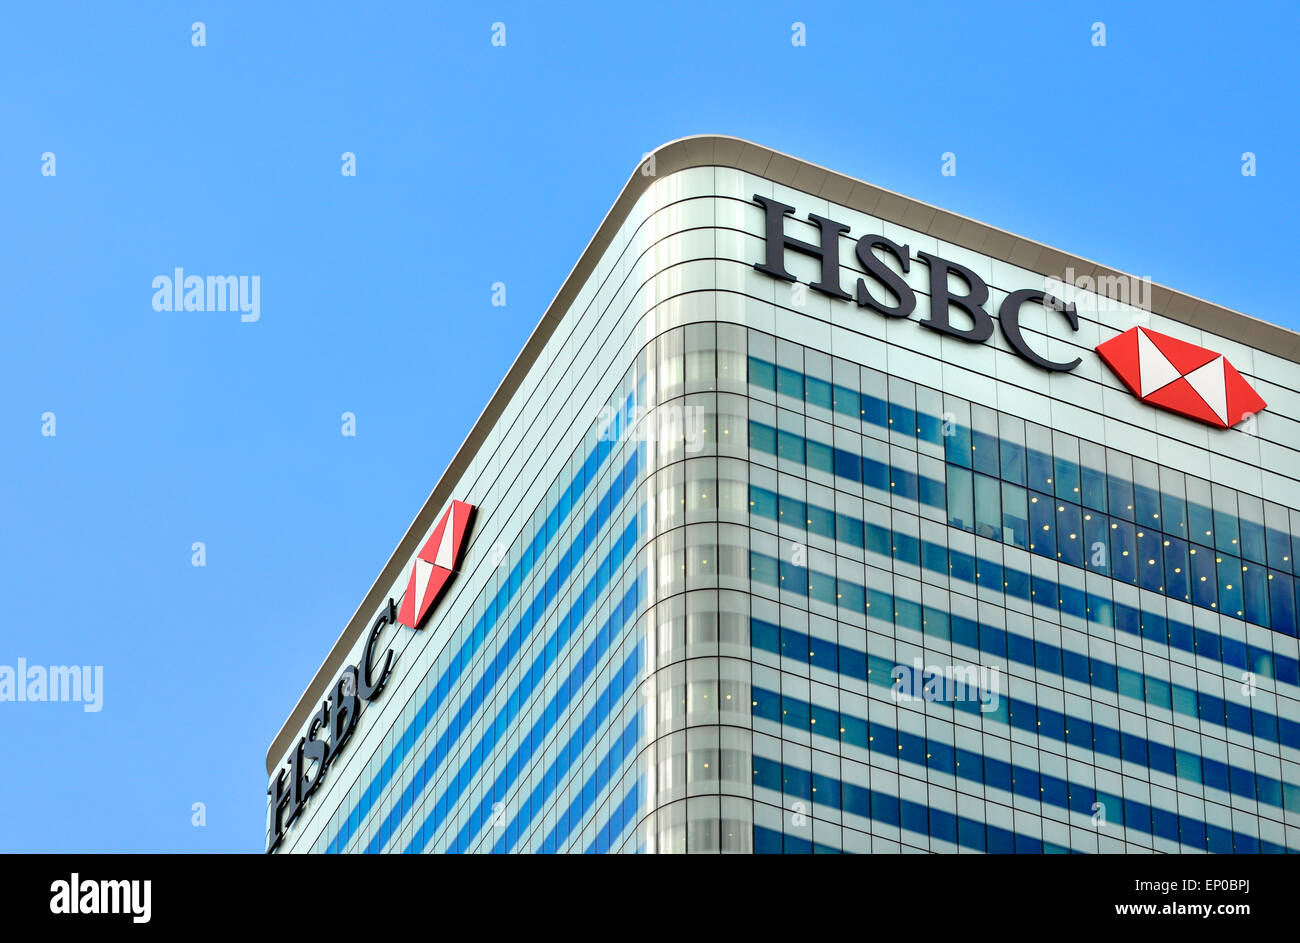 Londres, Angleterre, Royaume-Uni. Tour de la HSBC au Canada Place, Canary Wharf : Norman Foster (2002) Banque D'Images